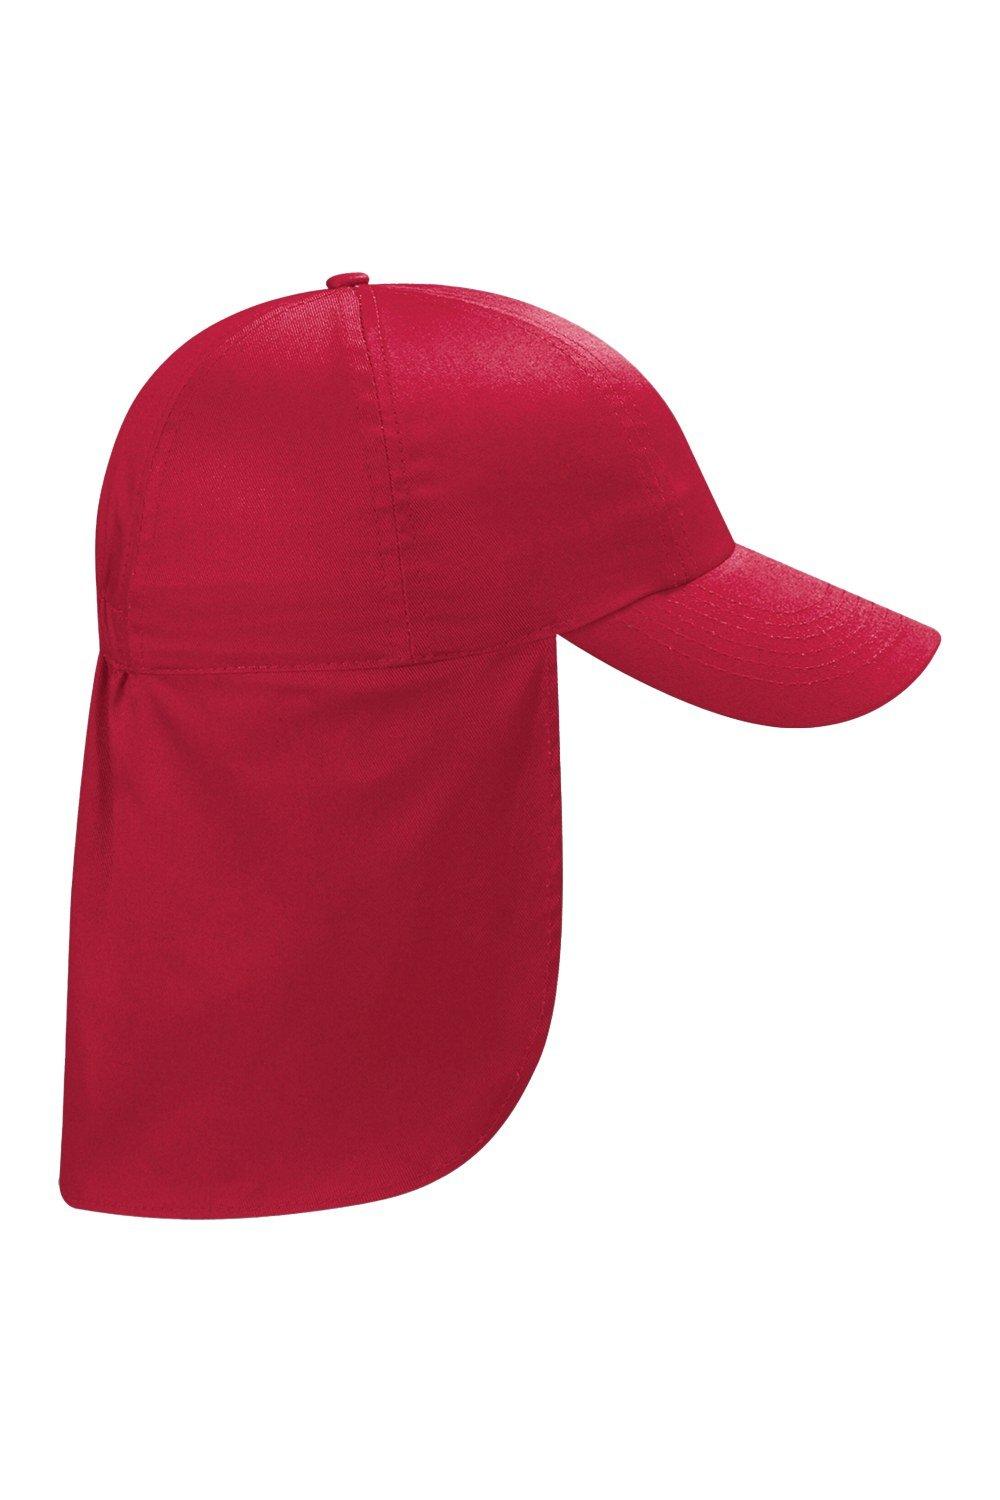 Шляпа легионера Beechfield, красный